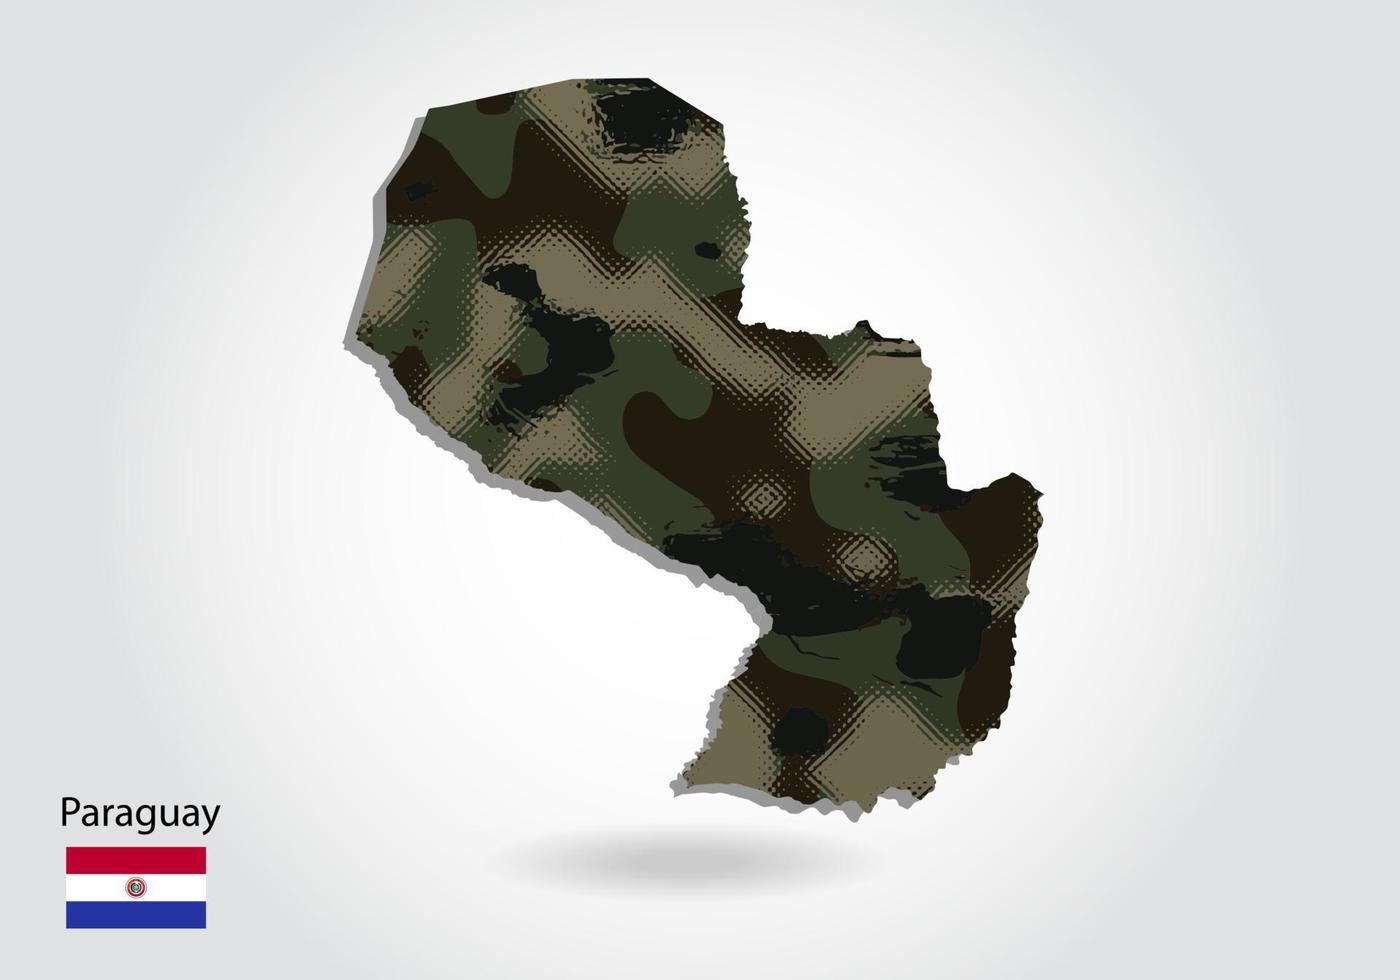 mapa do paraguai com padrão de camuflagem, floresta - textura verde no mapa. conceito militar para exército, soldado e guerra. brasão, bandeira. vetor